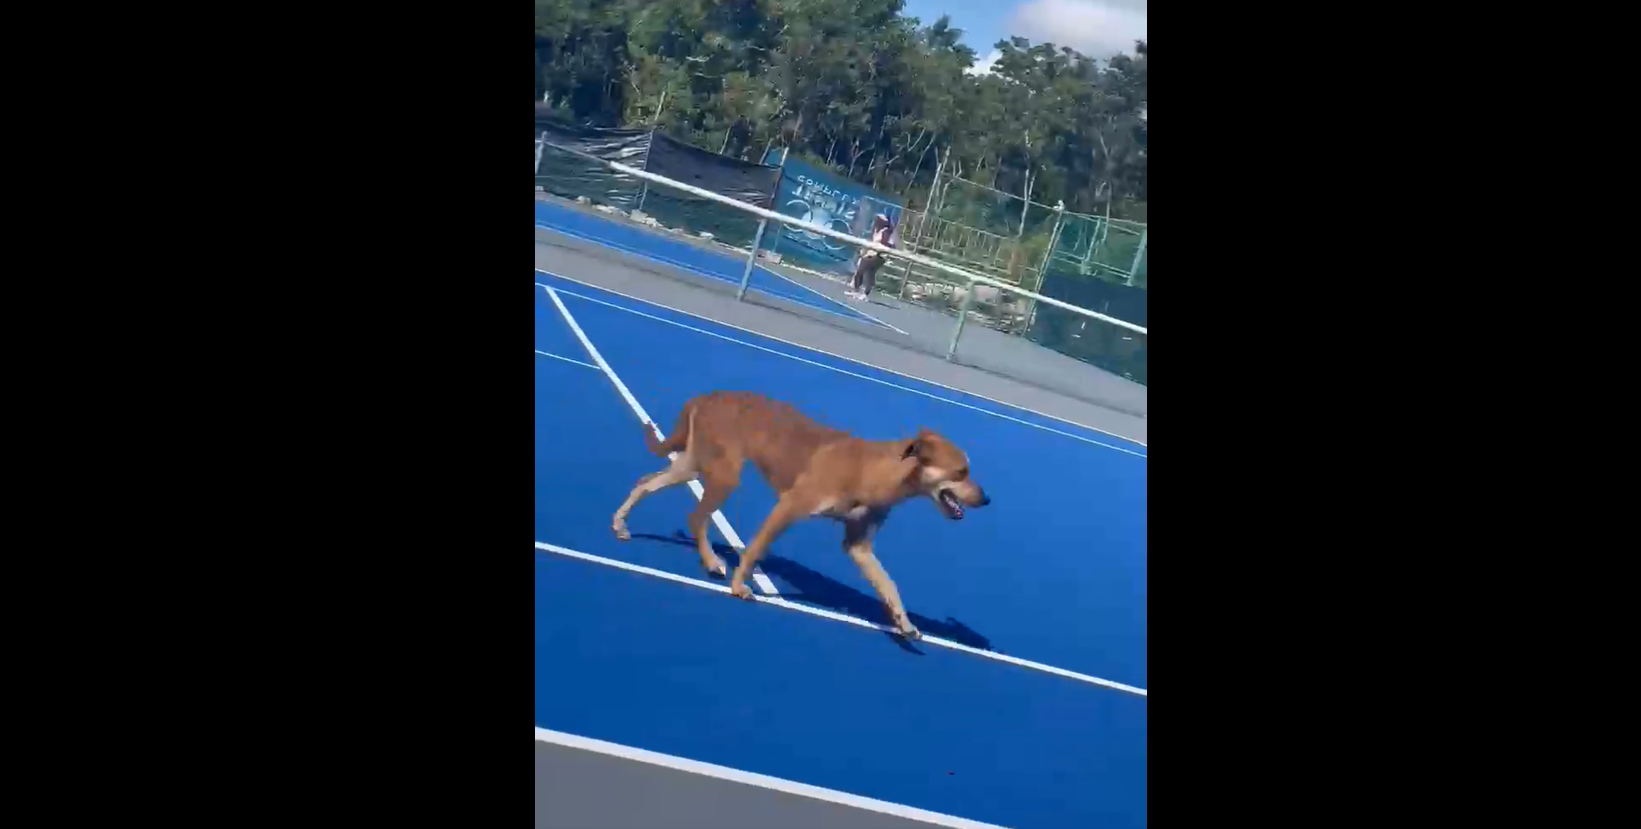 Кучета на корта по време на мач: Реалностите на ITF турнирите TennisKafe